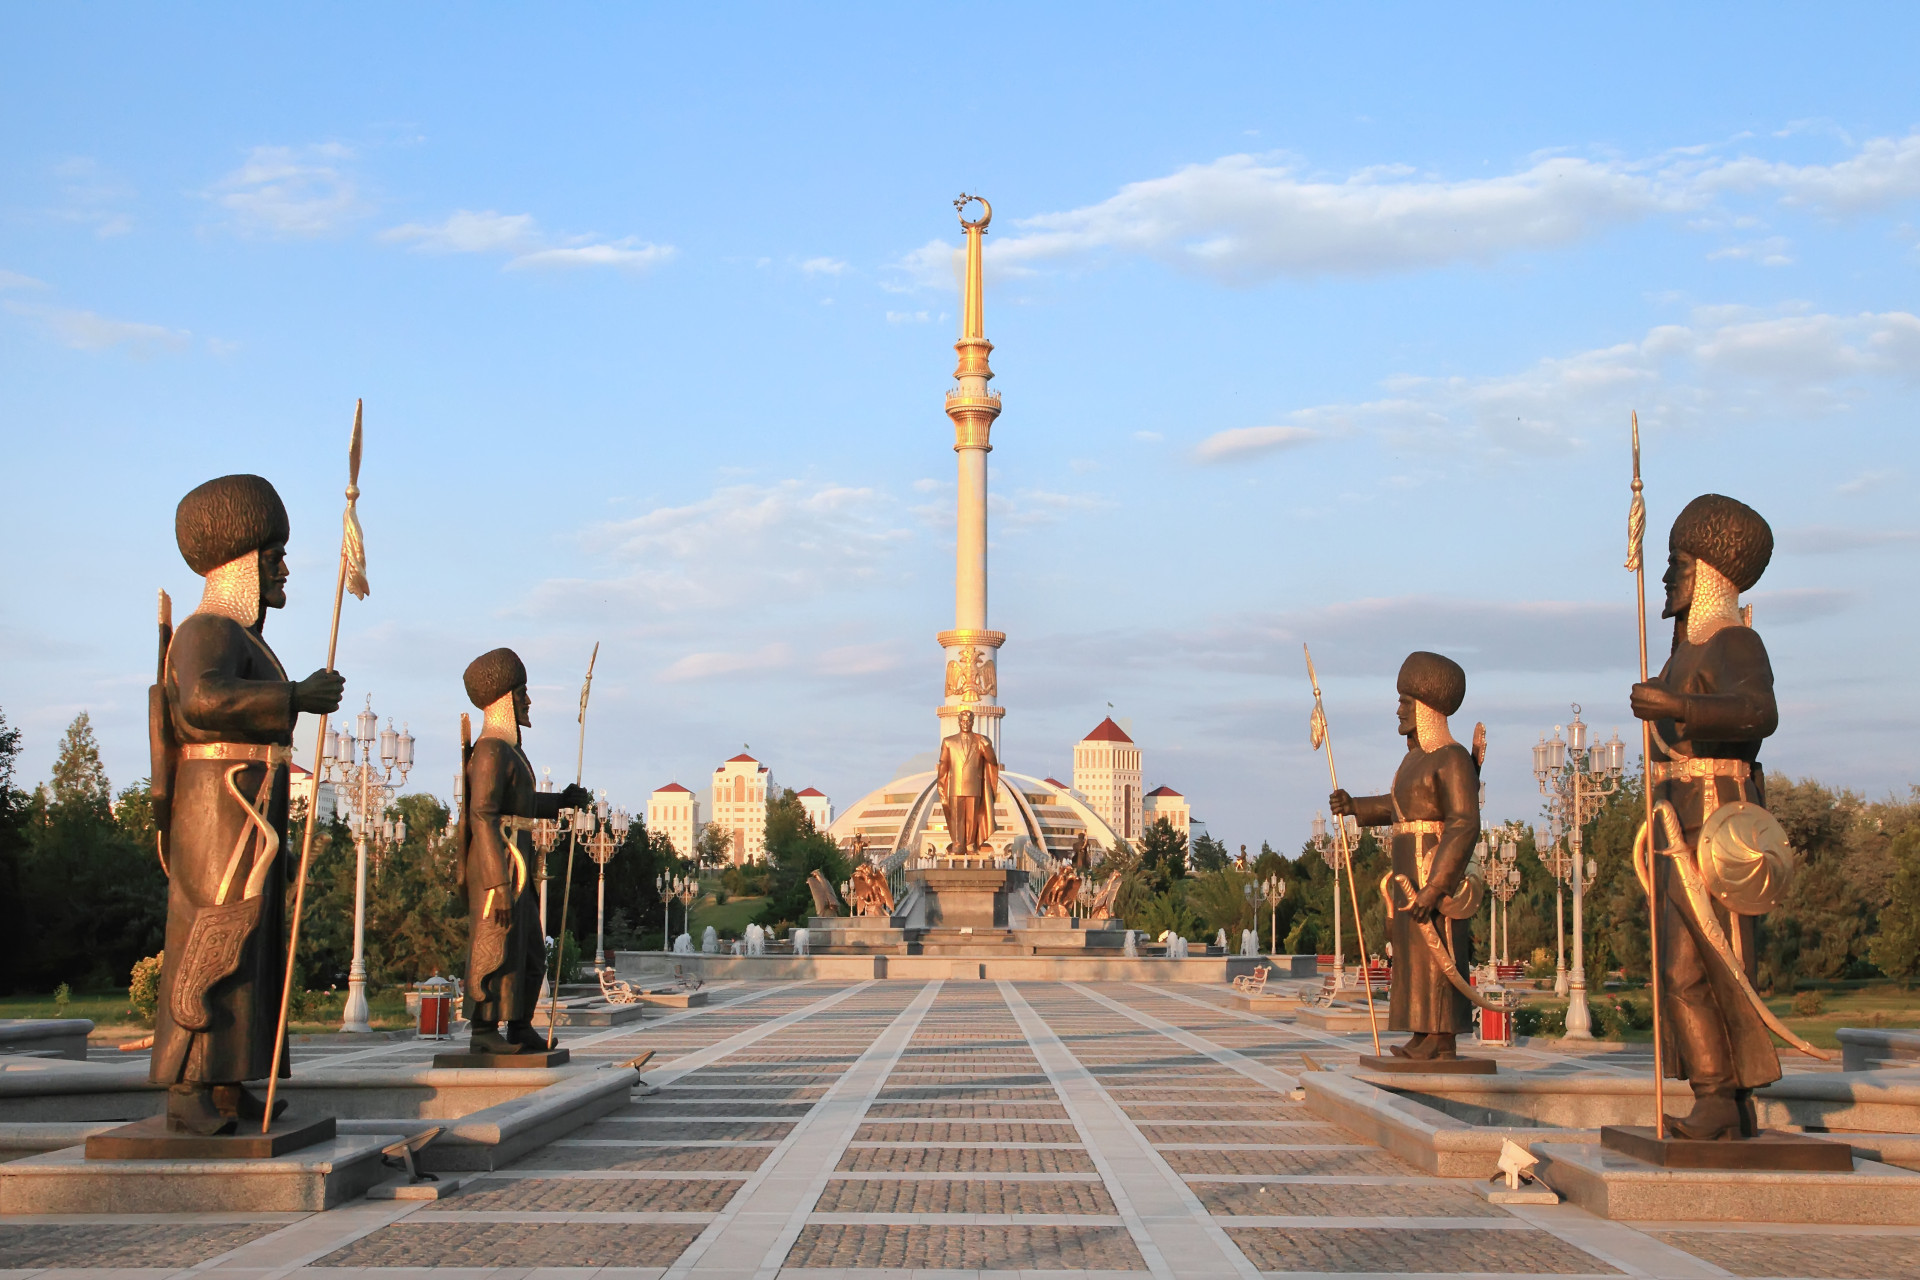 L'Asie centrale est plutôt méconnue des touristes. Le Turkménistan est de loin le moins visité de la région. La raison est peut-être due à l'interminable règne de l'étrange dictateur Saparmyrat Niyazov. Toutefois, le pays a commencé à se moderniser depuis le décès du dirigeant, en 2006.<p><a href="https://www.msn.com/fr-fr/community/channel/vid-7xx8mnucu55yw63we9va2gwr7uihbxwc68fxqp25x6tg4ftibpra?cvid=94631541bc0f4f89bfd59158d696ad7e">Suivez-nous et accédez tous les jours à du contenu exclusif</a></p>